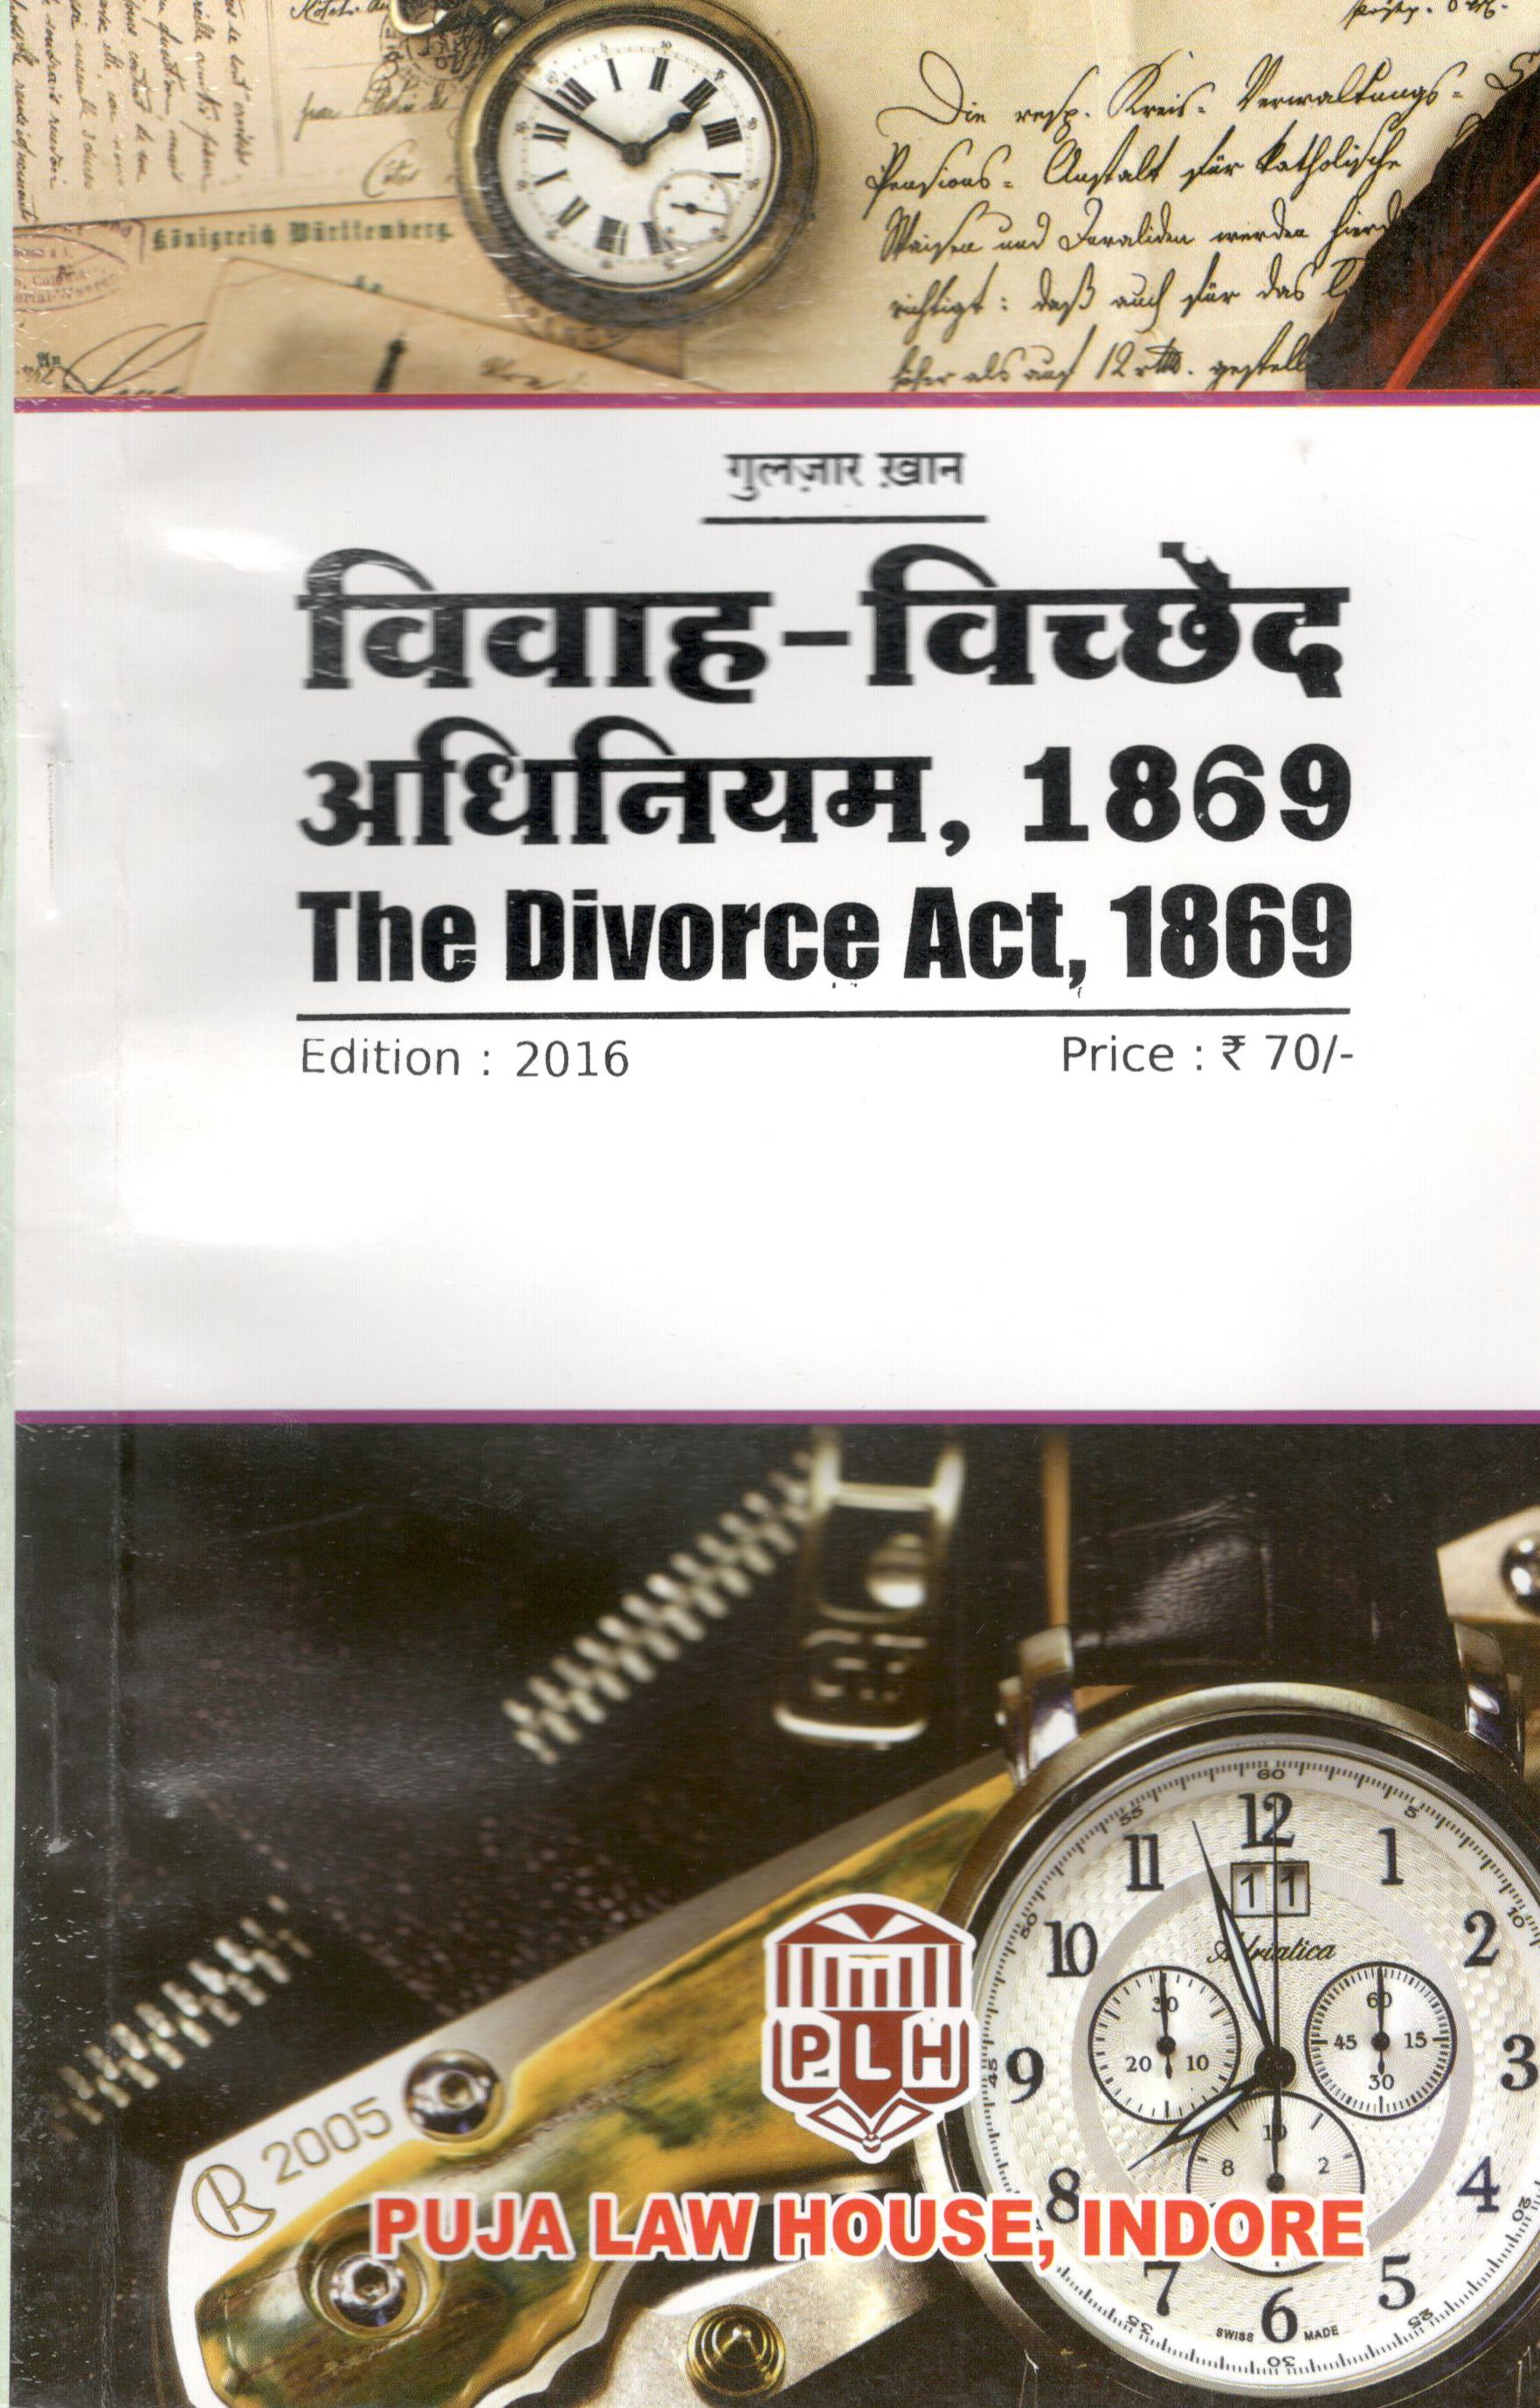 भारतीय विवाह-विच्छेद अधिनियम, 1869 / The Divorce Act, 1869